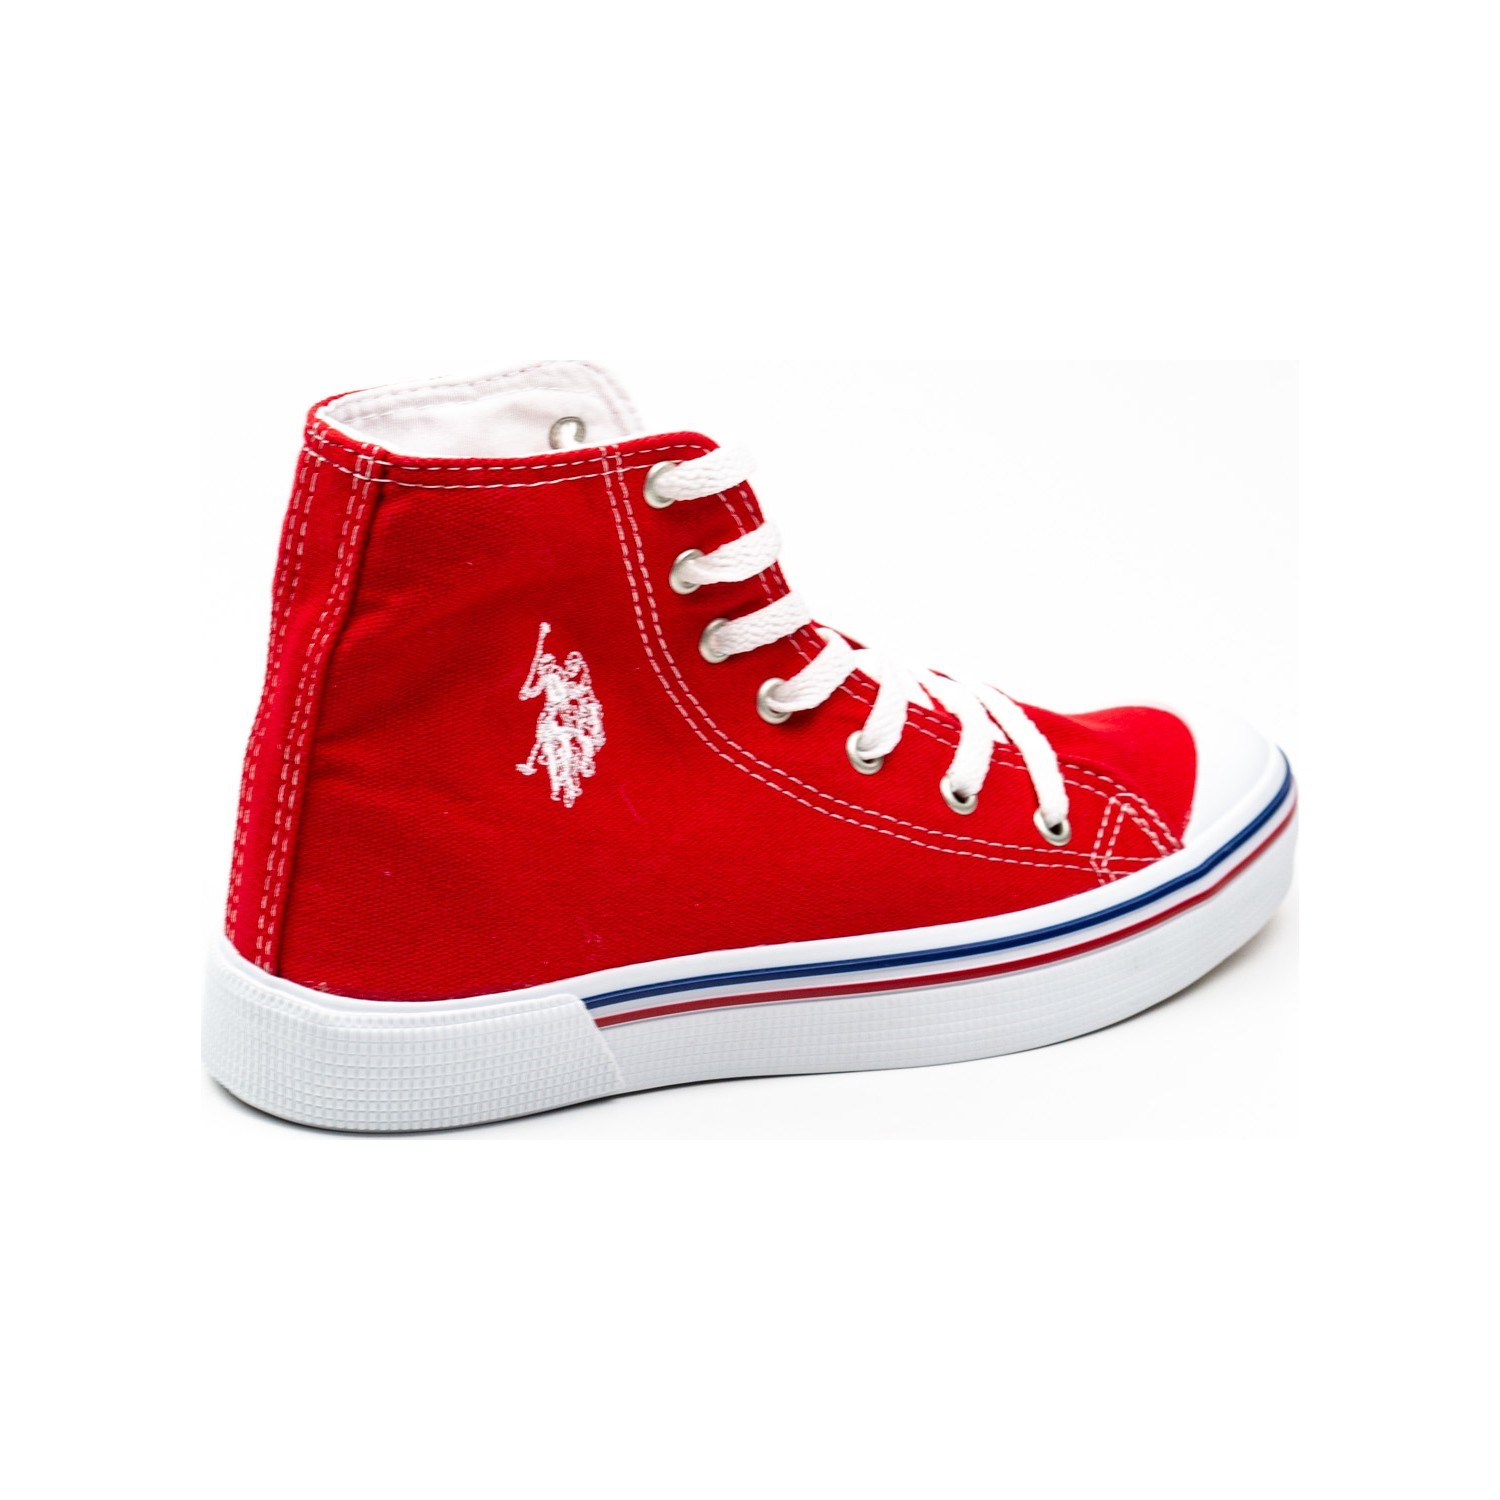 U.S Polo Kadın Ayakkabı 100910640 Kırmızı